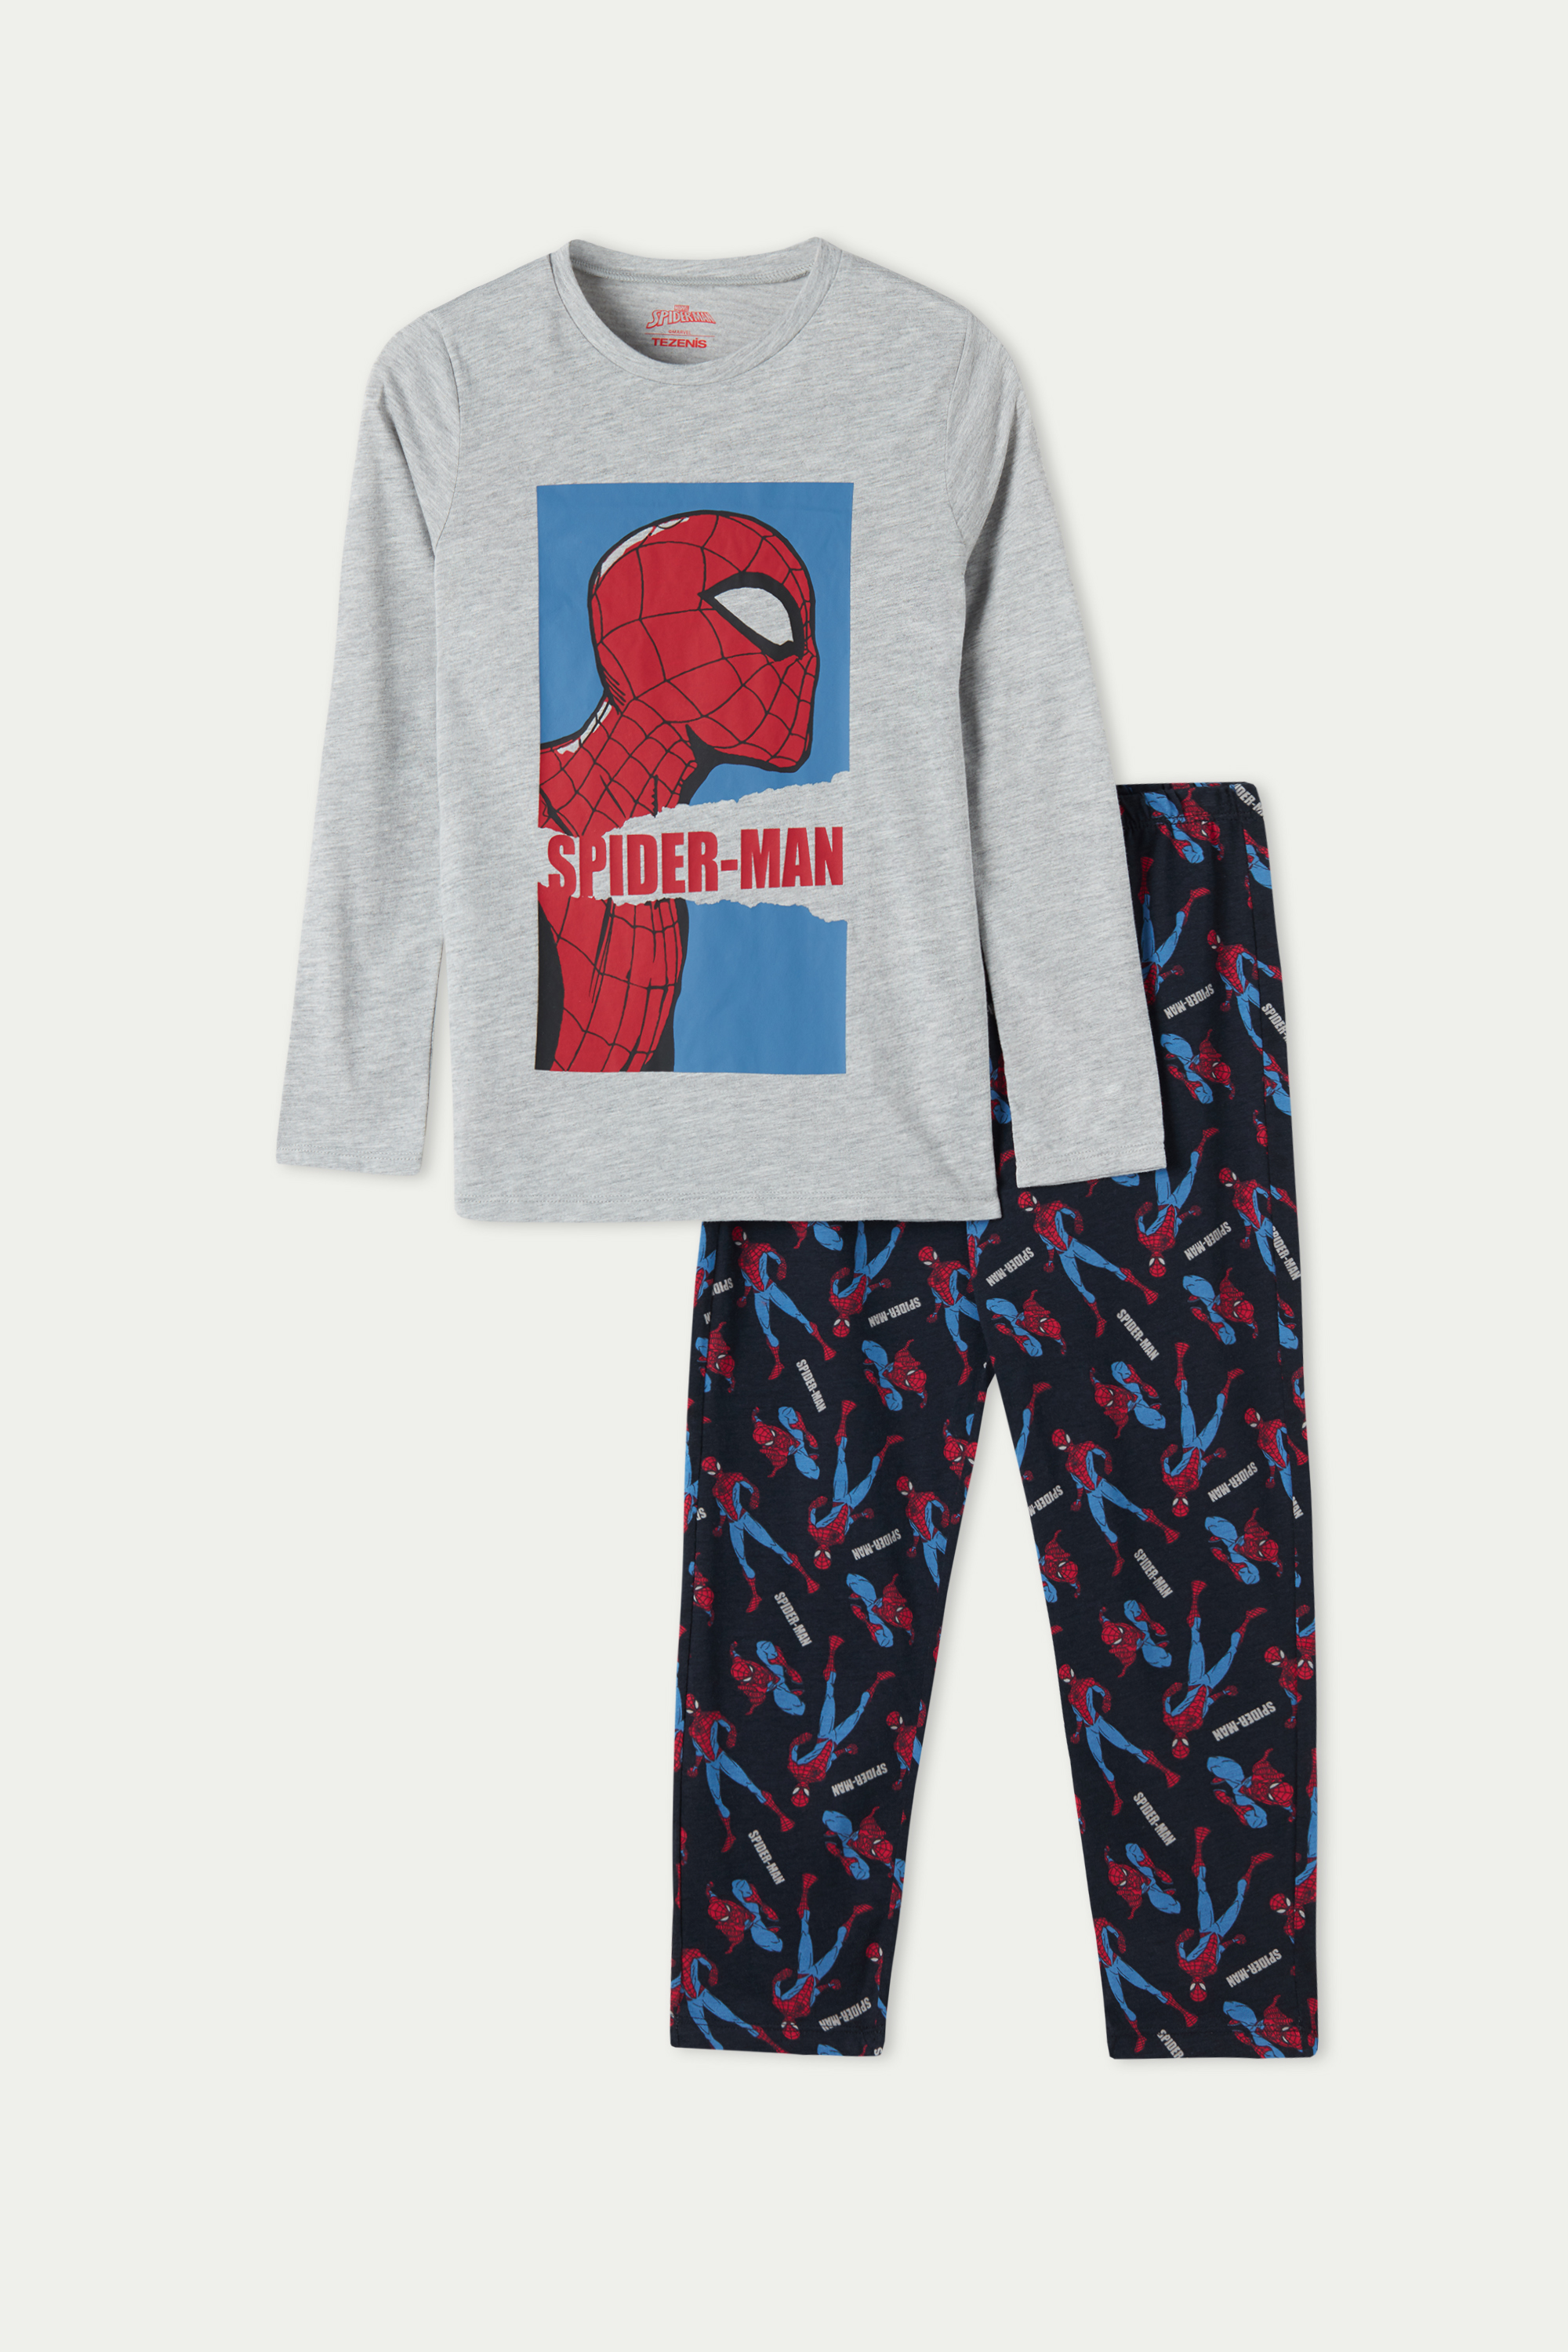 Pigiama Lungo Bimbo Stampa Spider-Man Bambino Taglia Calzedonia Bambino Abbigliamento Abbigliamento per la notte Pigiami 